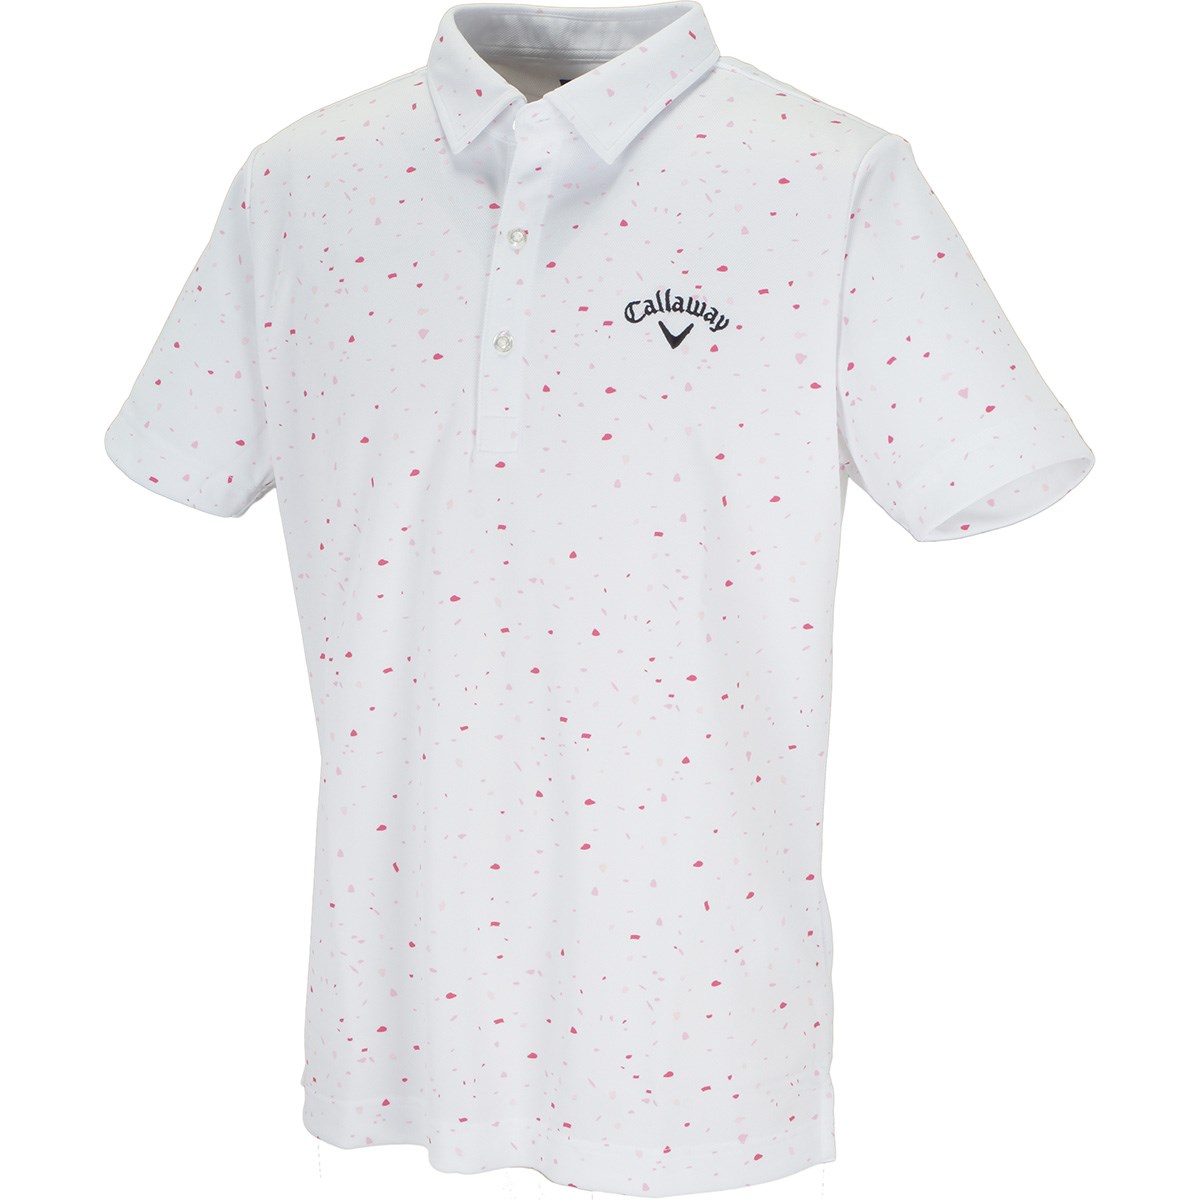 キャロウェイゴルフ(Callaway Golf) 肌ドライ200cc桜風吹 半袖ポロシャツ 